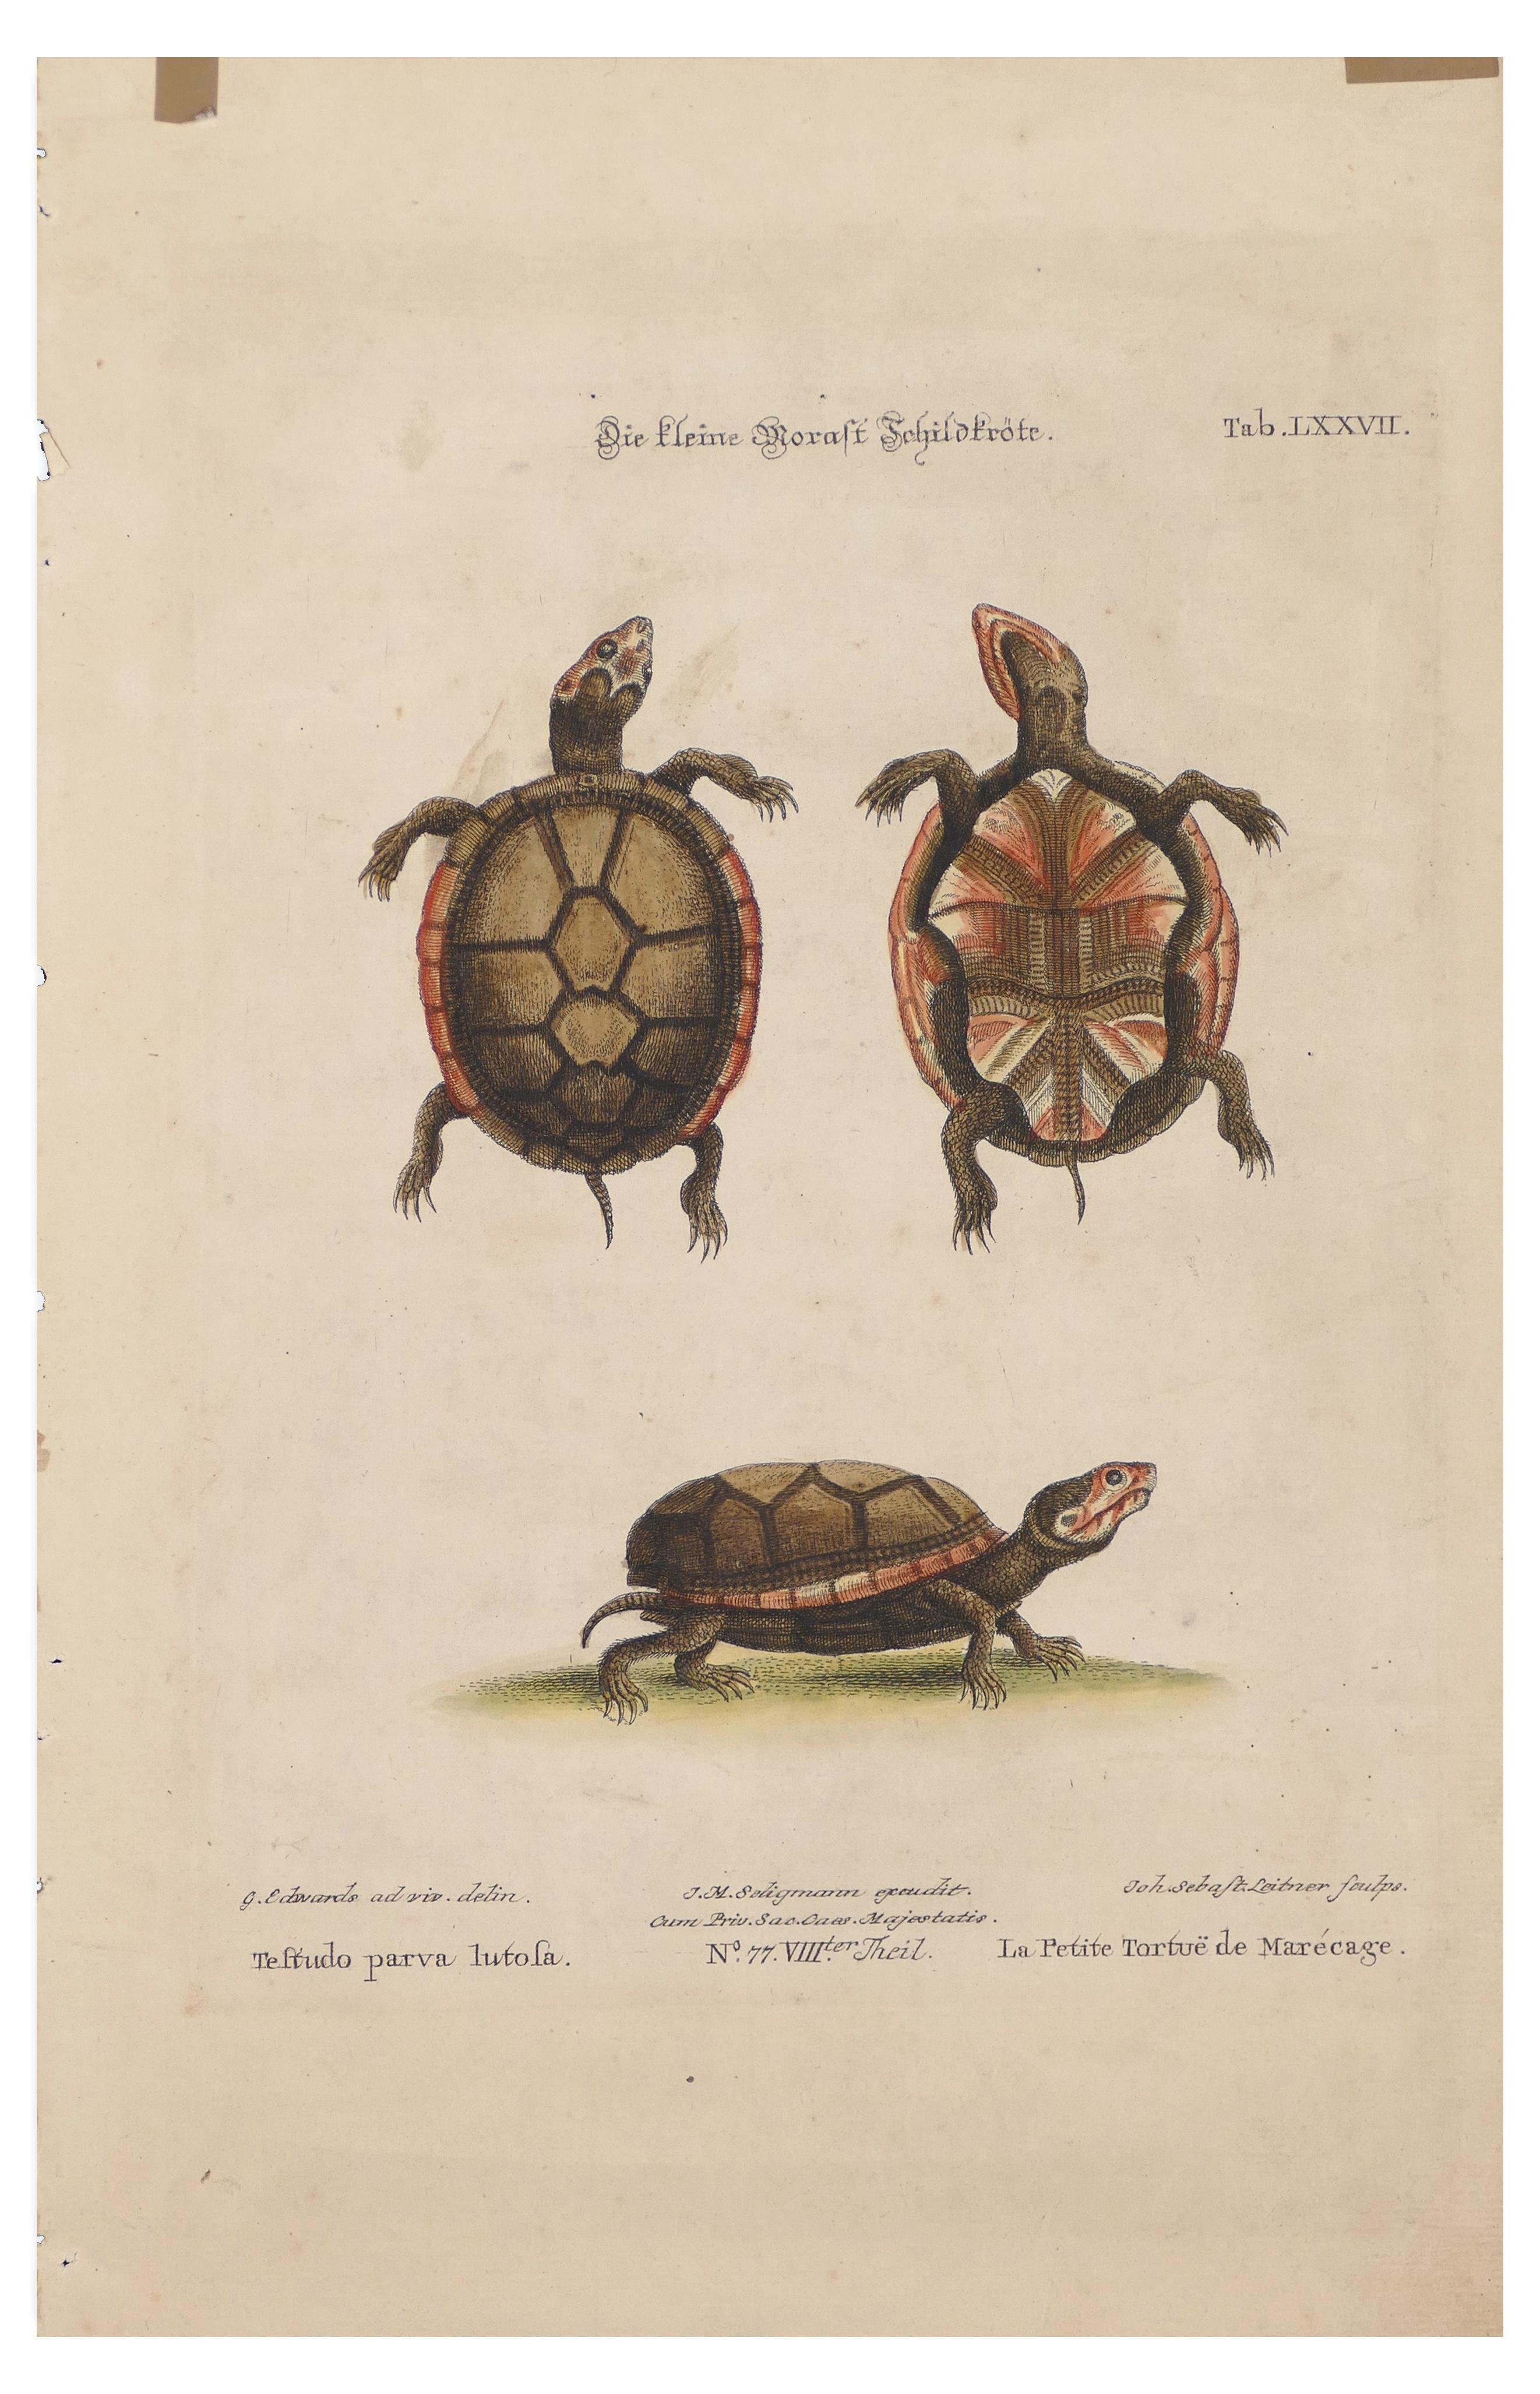 Turtles ist ein Originaldruck von George Edwards aus dem 18. Jahrhundert.

Farblithographie.

Originaltitel: Die kleine Moraft Tchildgröte, Tab. LXXVII. 

Guter Zustand, abgesehen von kleinen Flecken mit aufgeklebten Flecken auf der Oberseite und